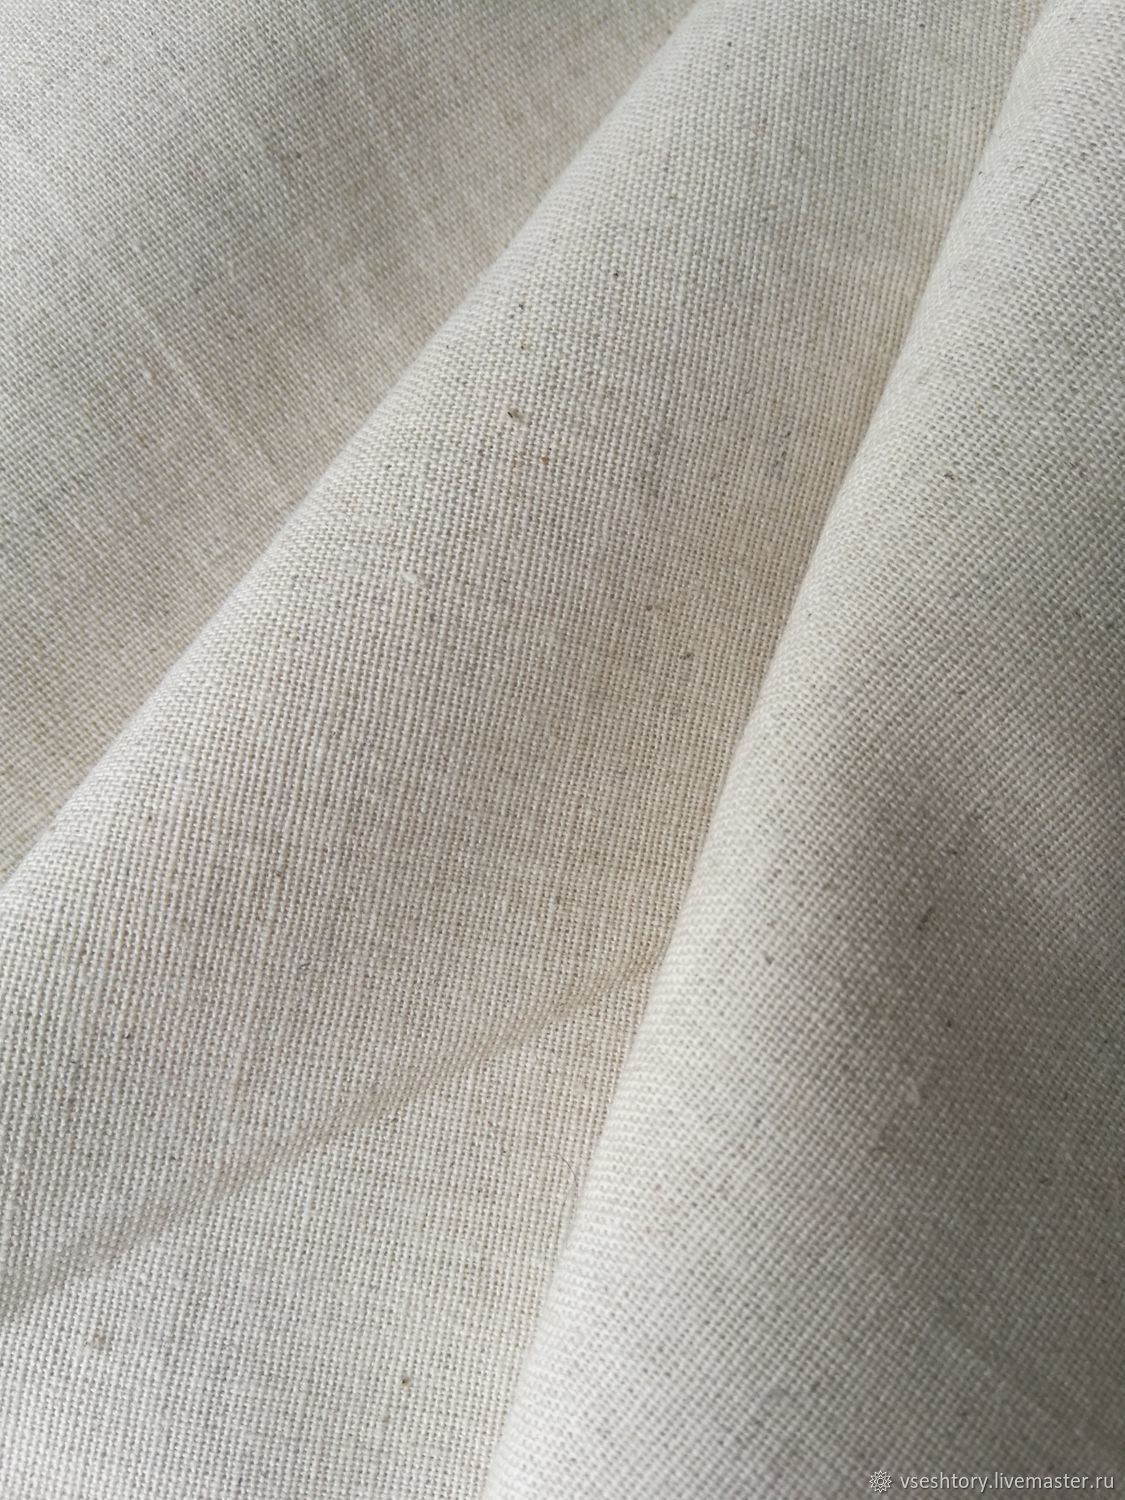 Льняной какой цвет. Ткань Apollo Linen. Cotton Linen (4362/Изюм). Lima Linen ткань Аскона. Льняная ткань.